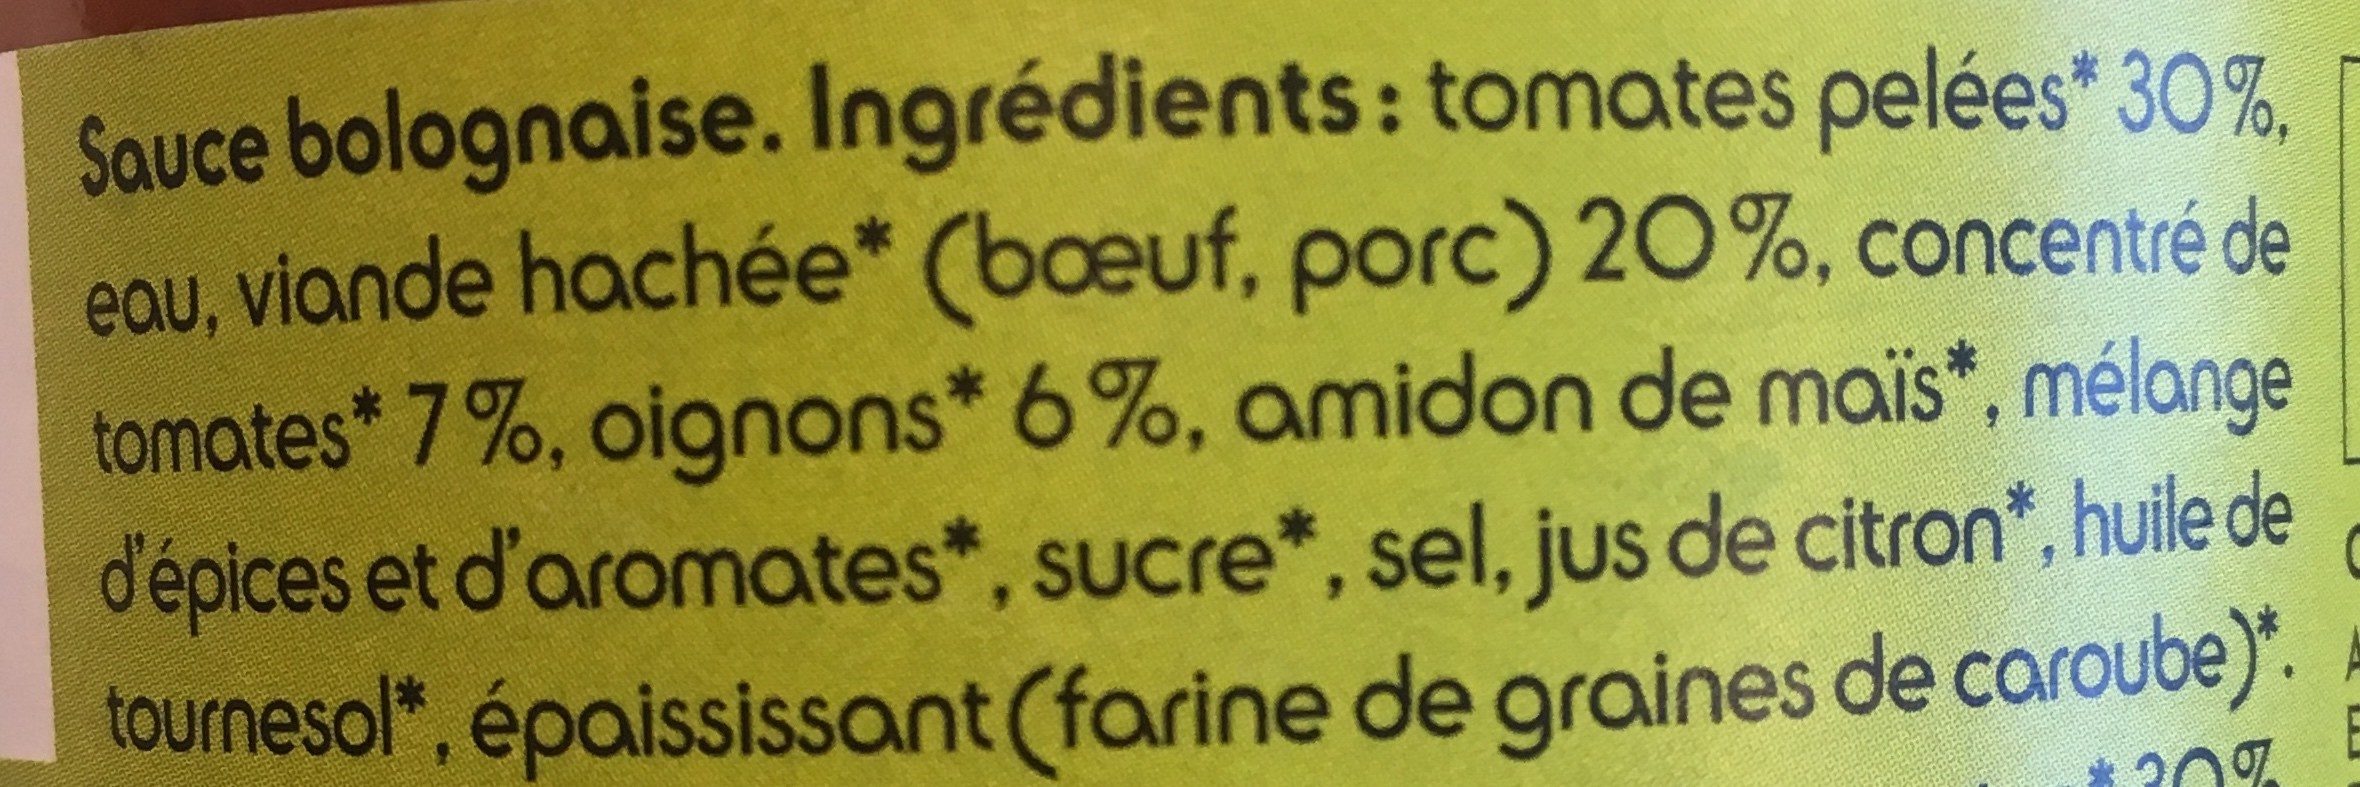 Sauce bolognaise - Ingrédients